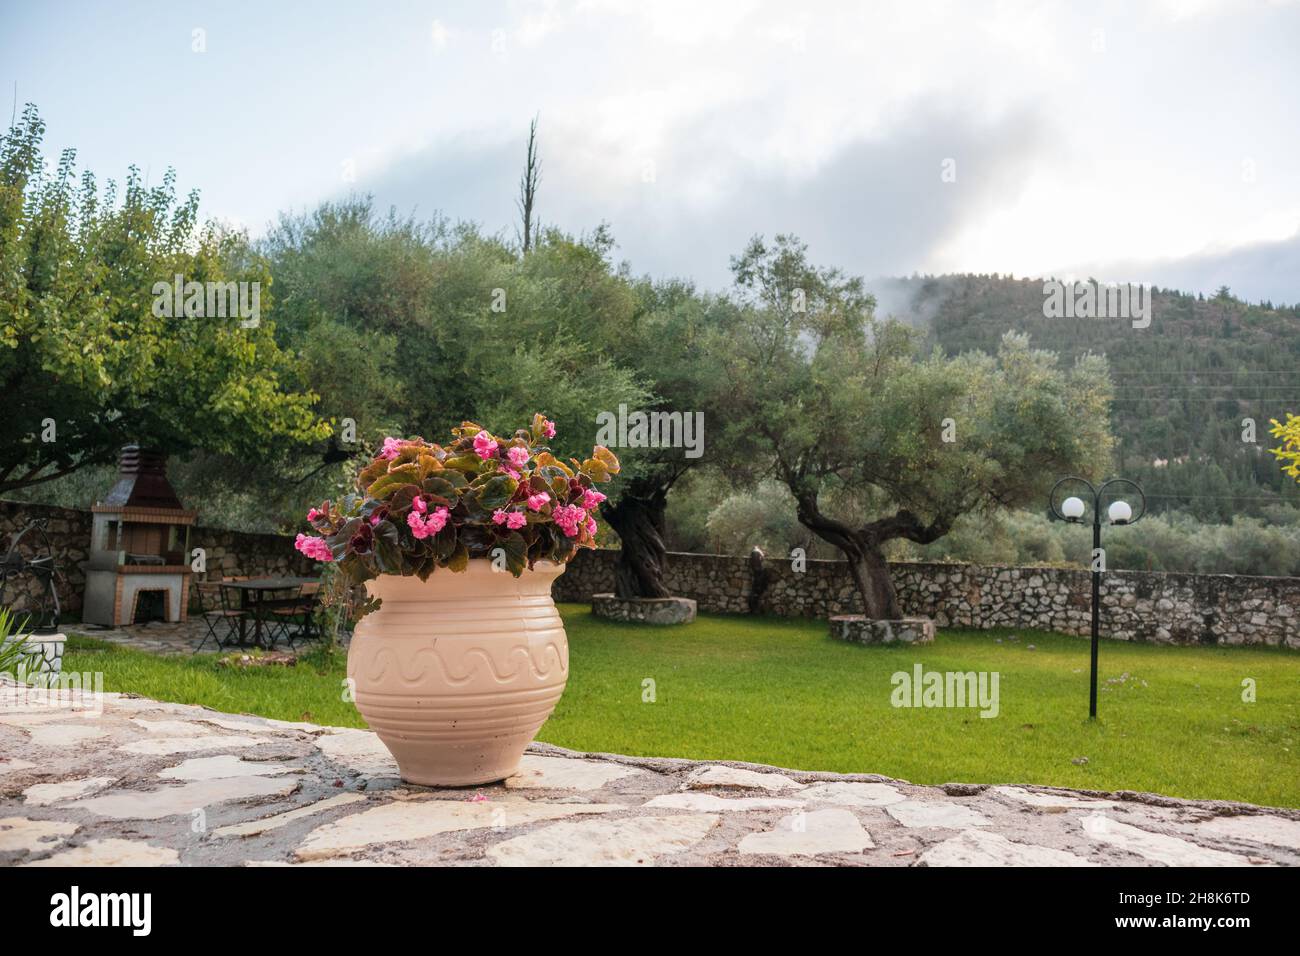 Jarrón grande con flores rosas en verde veraniego tradicional jardín griego con olivos y colinas nubladas. Viajes de verano lugares detalles de la arquitectura Foto de stock